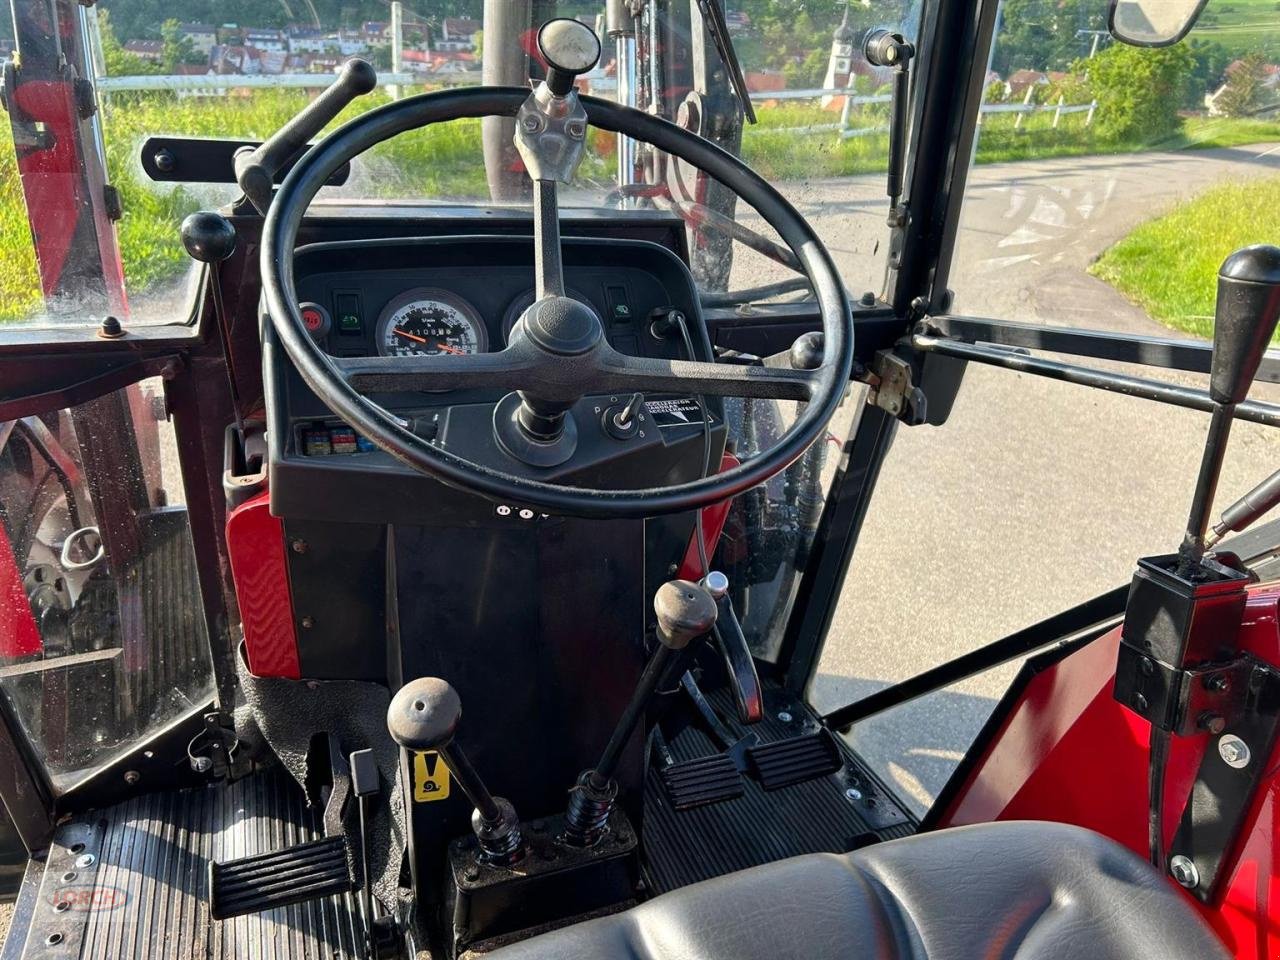 Traktor des Typs Case IH IHC 840 Allrad, Gebrauchtmaschine in Trochtelfingen (Bild 7)